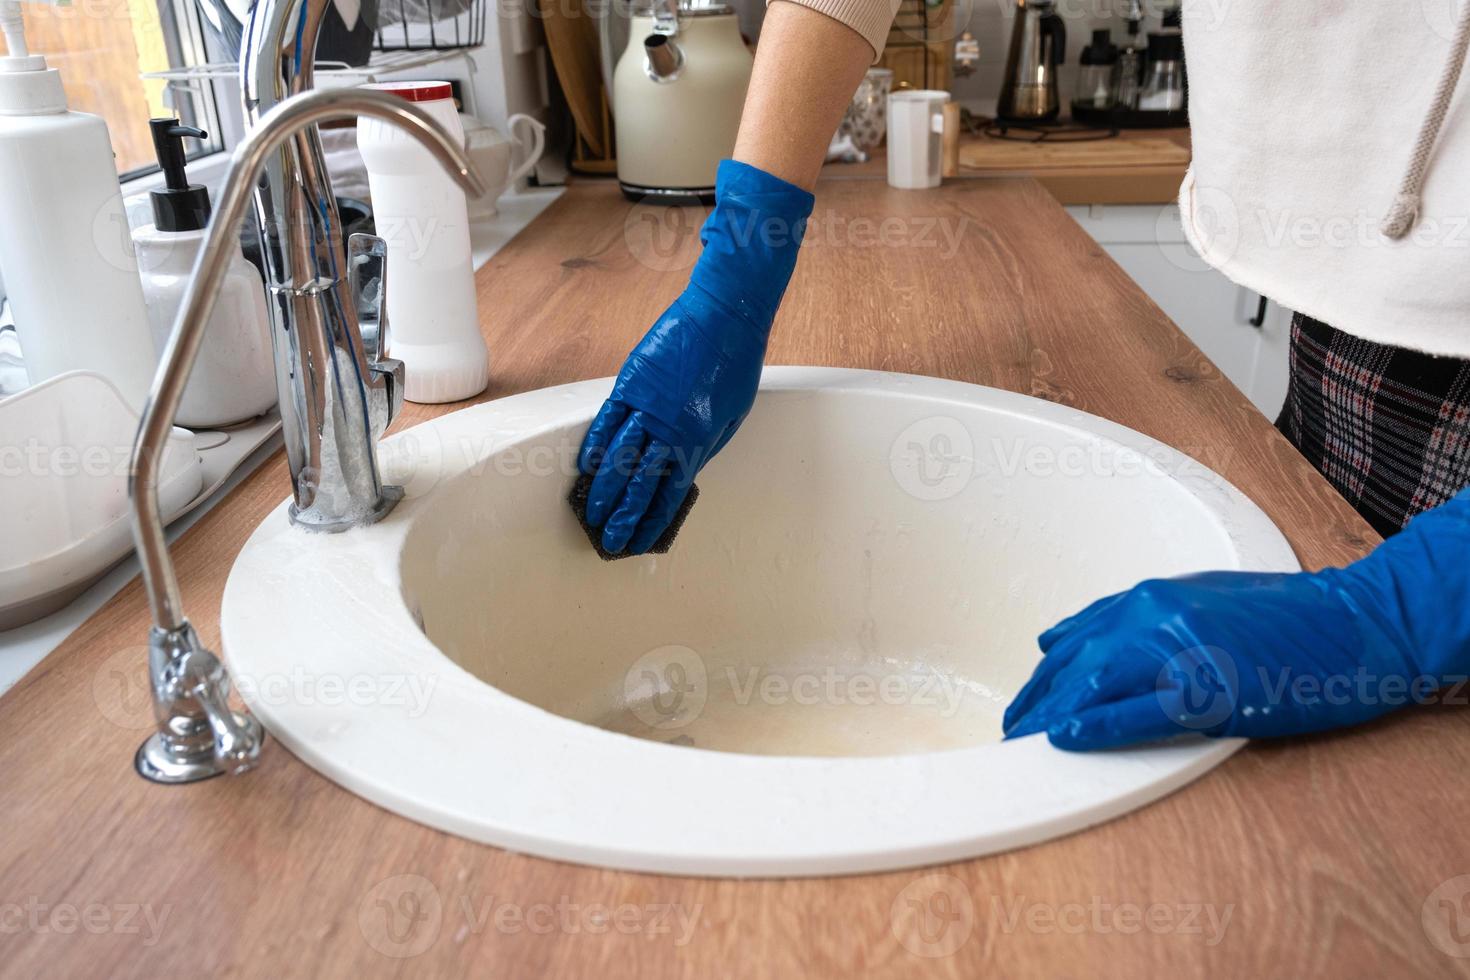 évier de nettoyage dans la cuisine, main dans les gants et éponge, détergent, poudre sèche. intérieur confortable de la maison, restauration de l'ordre, propreté, désinfection photo